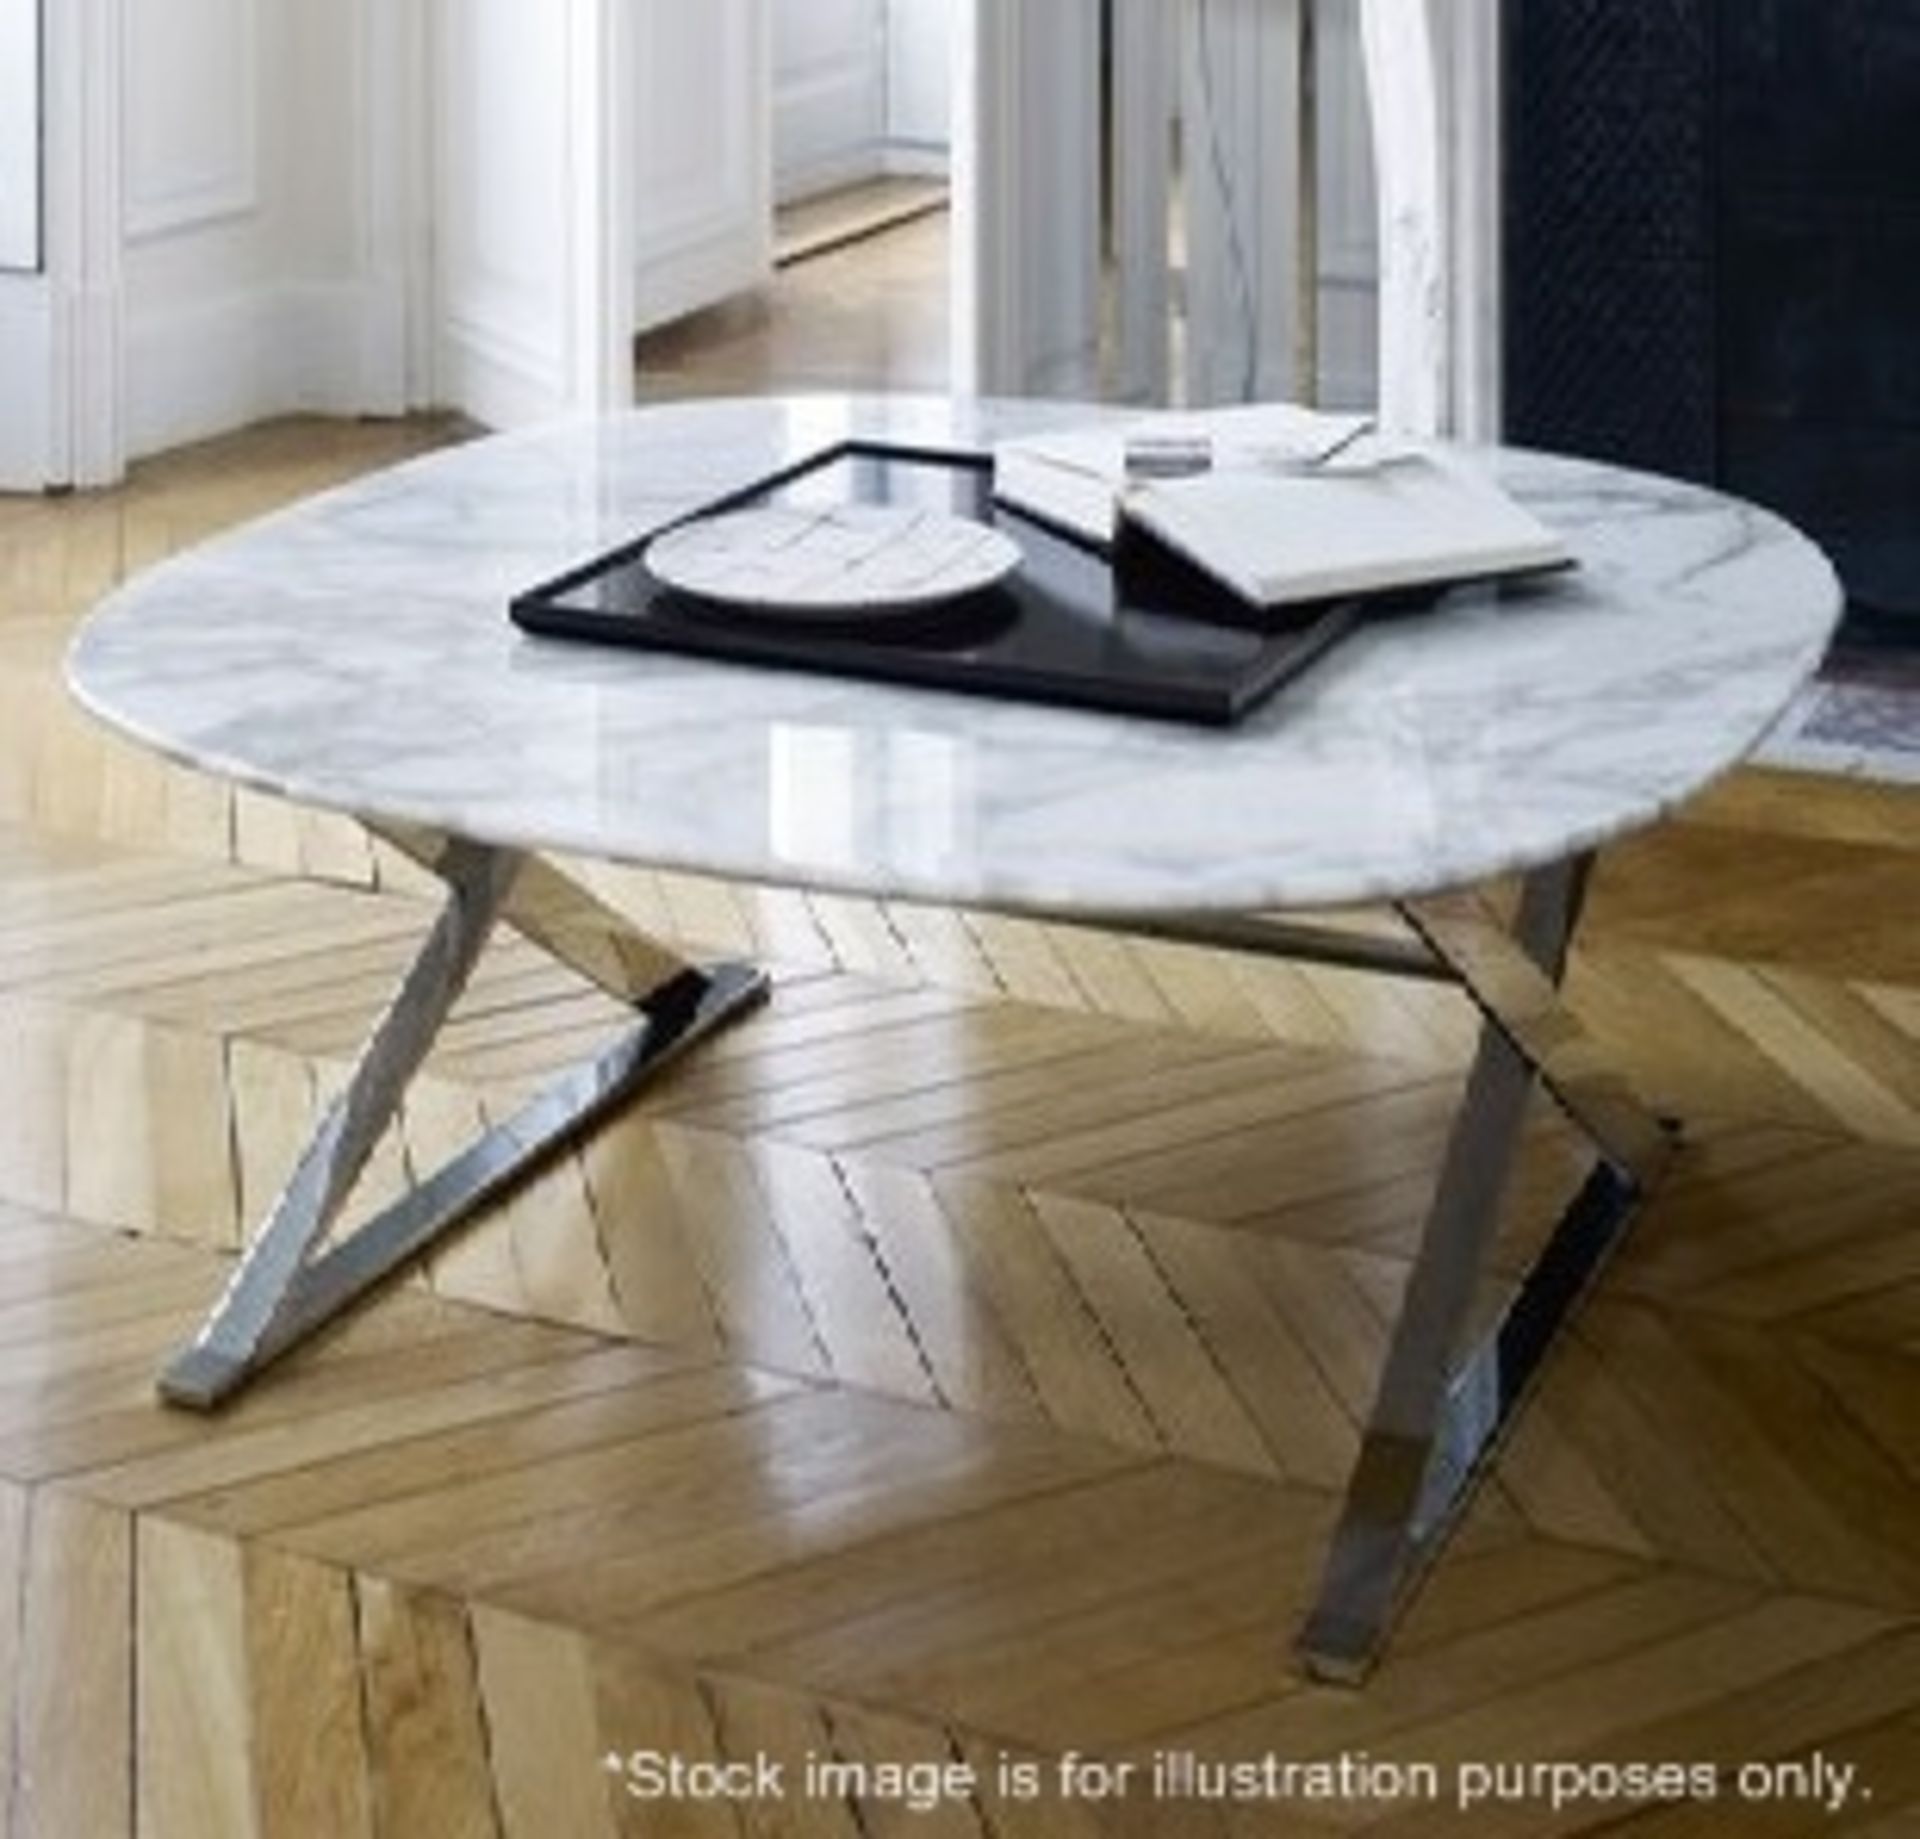 1 x B&B ITALIA 'Pathos' 110cm Designer Square Calacatta White Marble Table Top - Original RRP £5,169